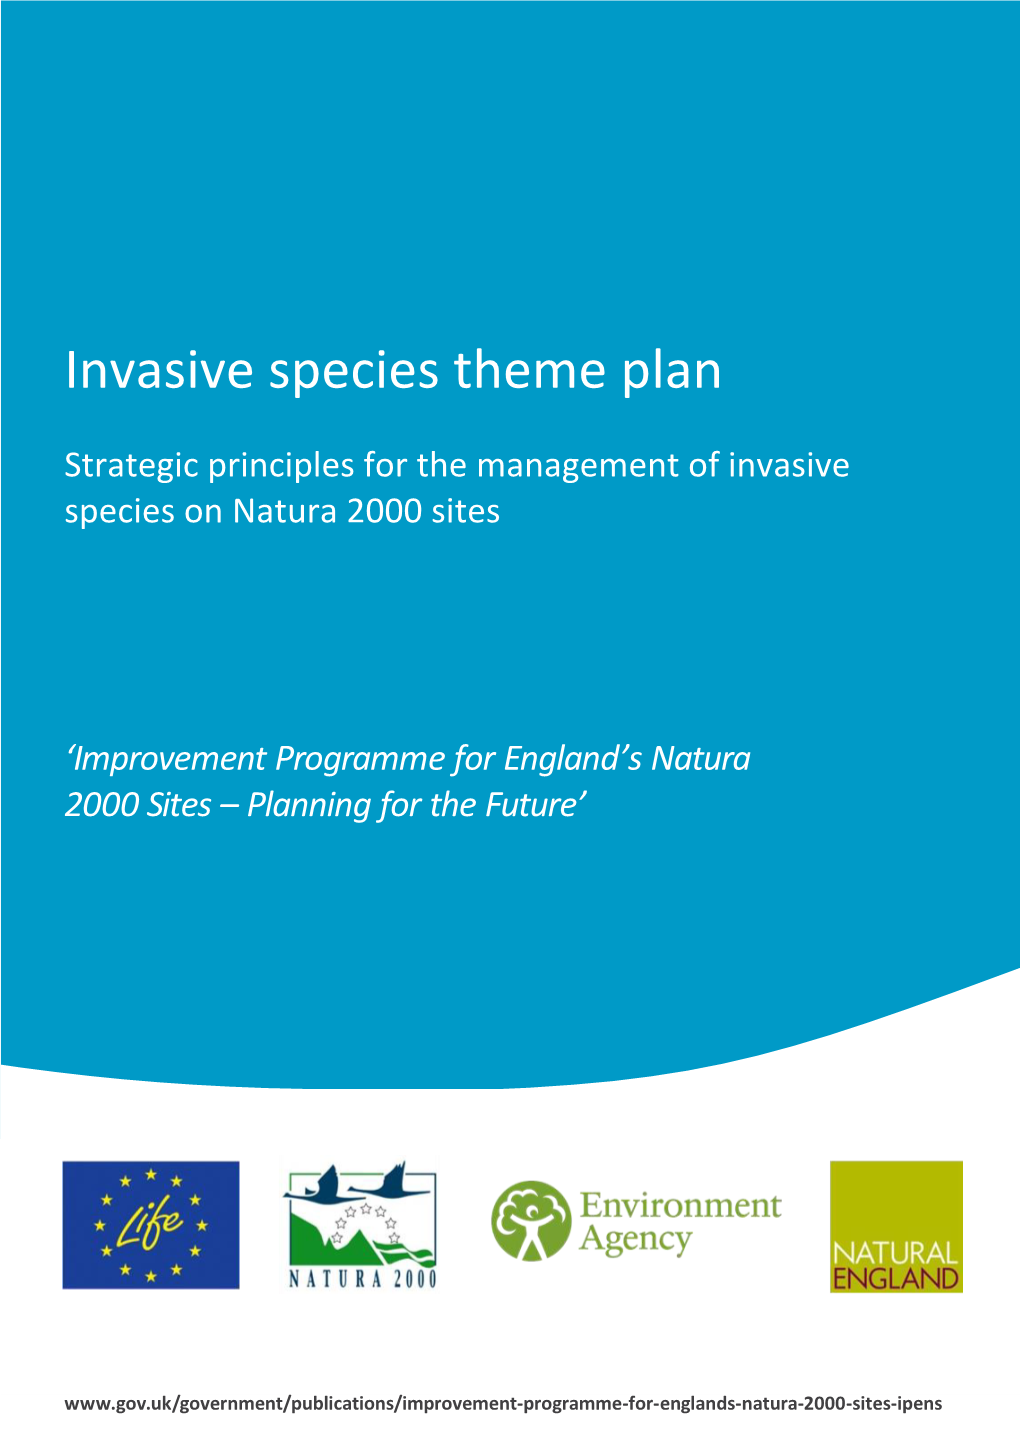 Invasive Species Theme Plan